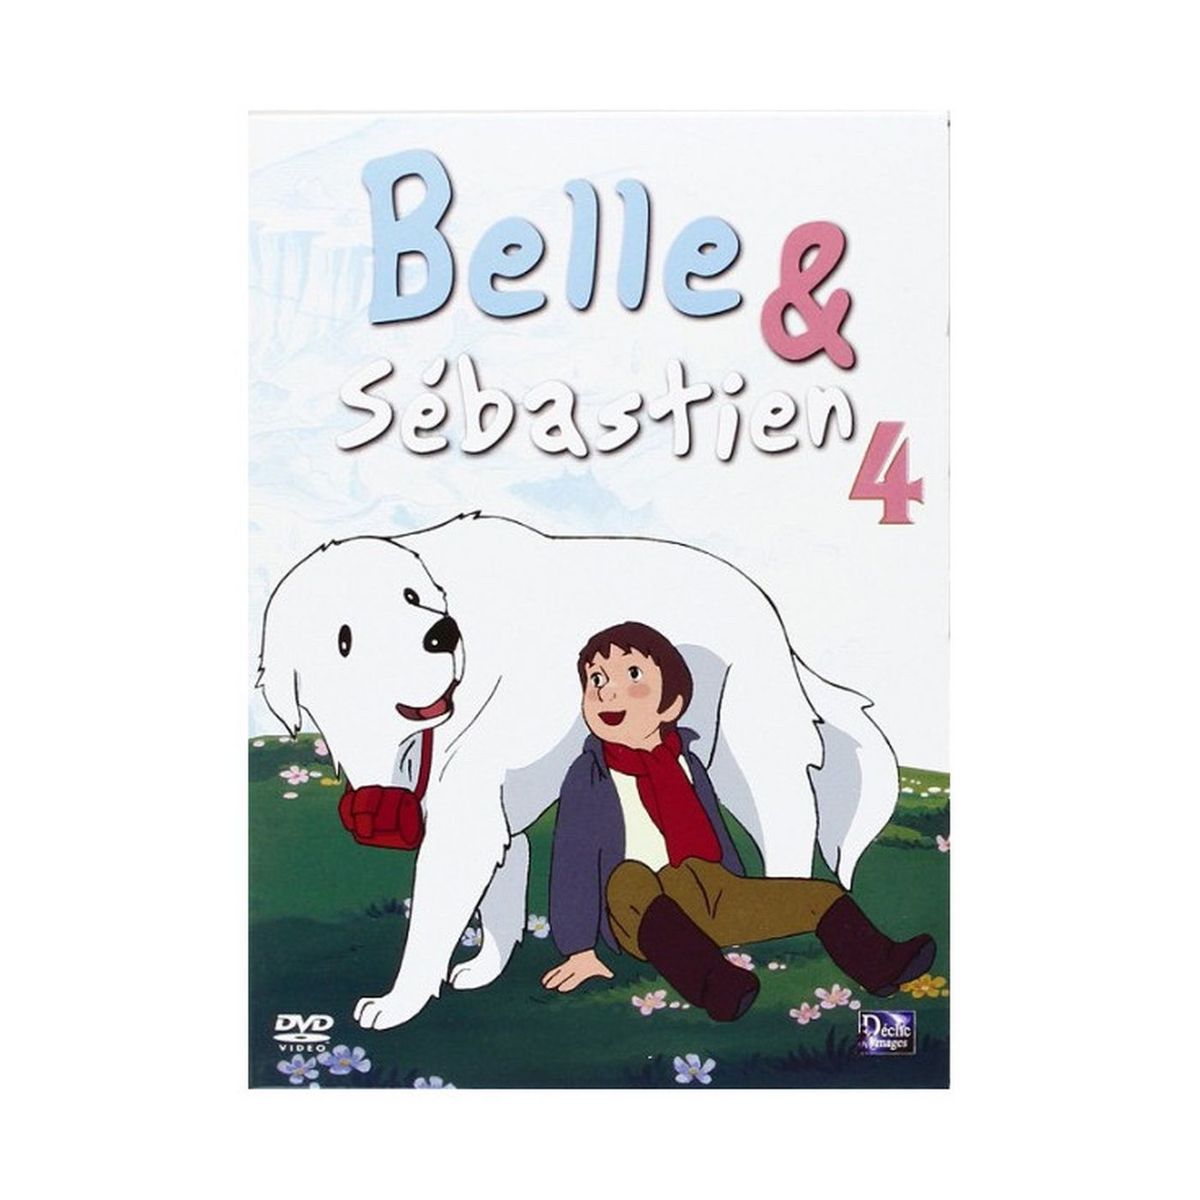 Belle et Sébastien Vol 4 DVD